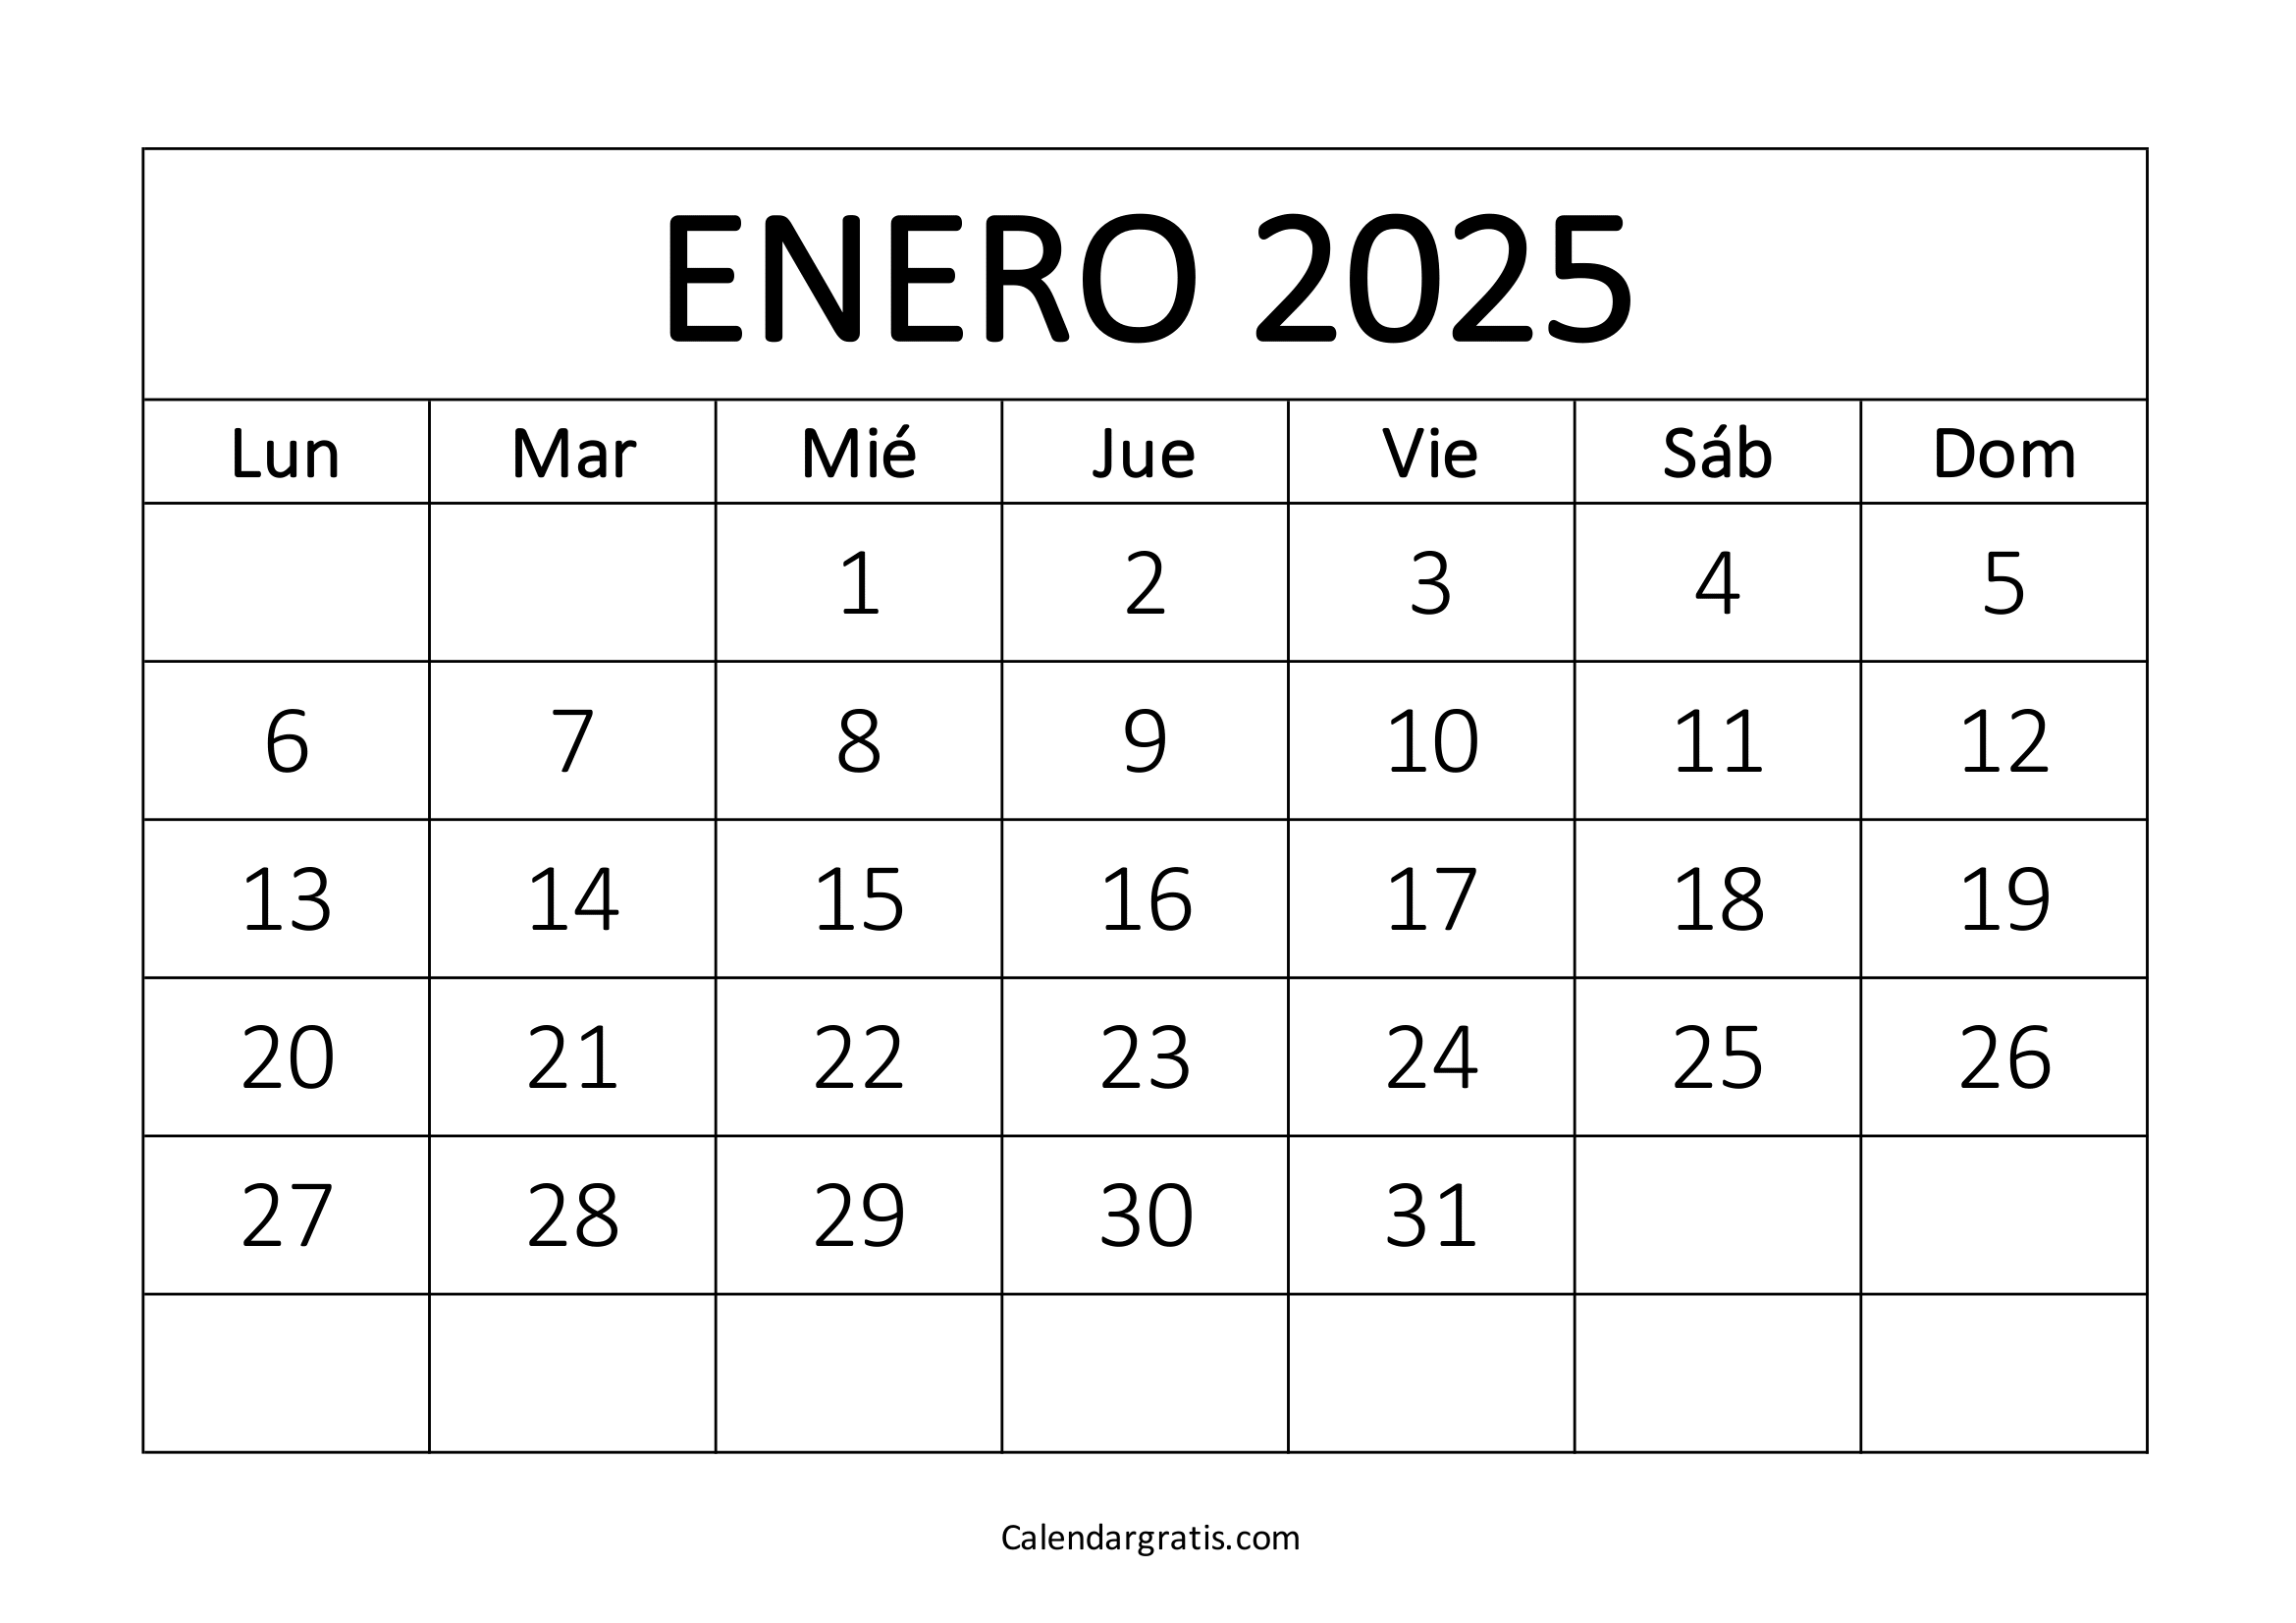 Calendario para imprimir enero 2025 gratis